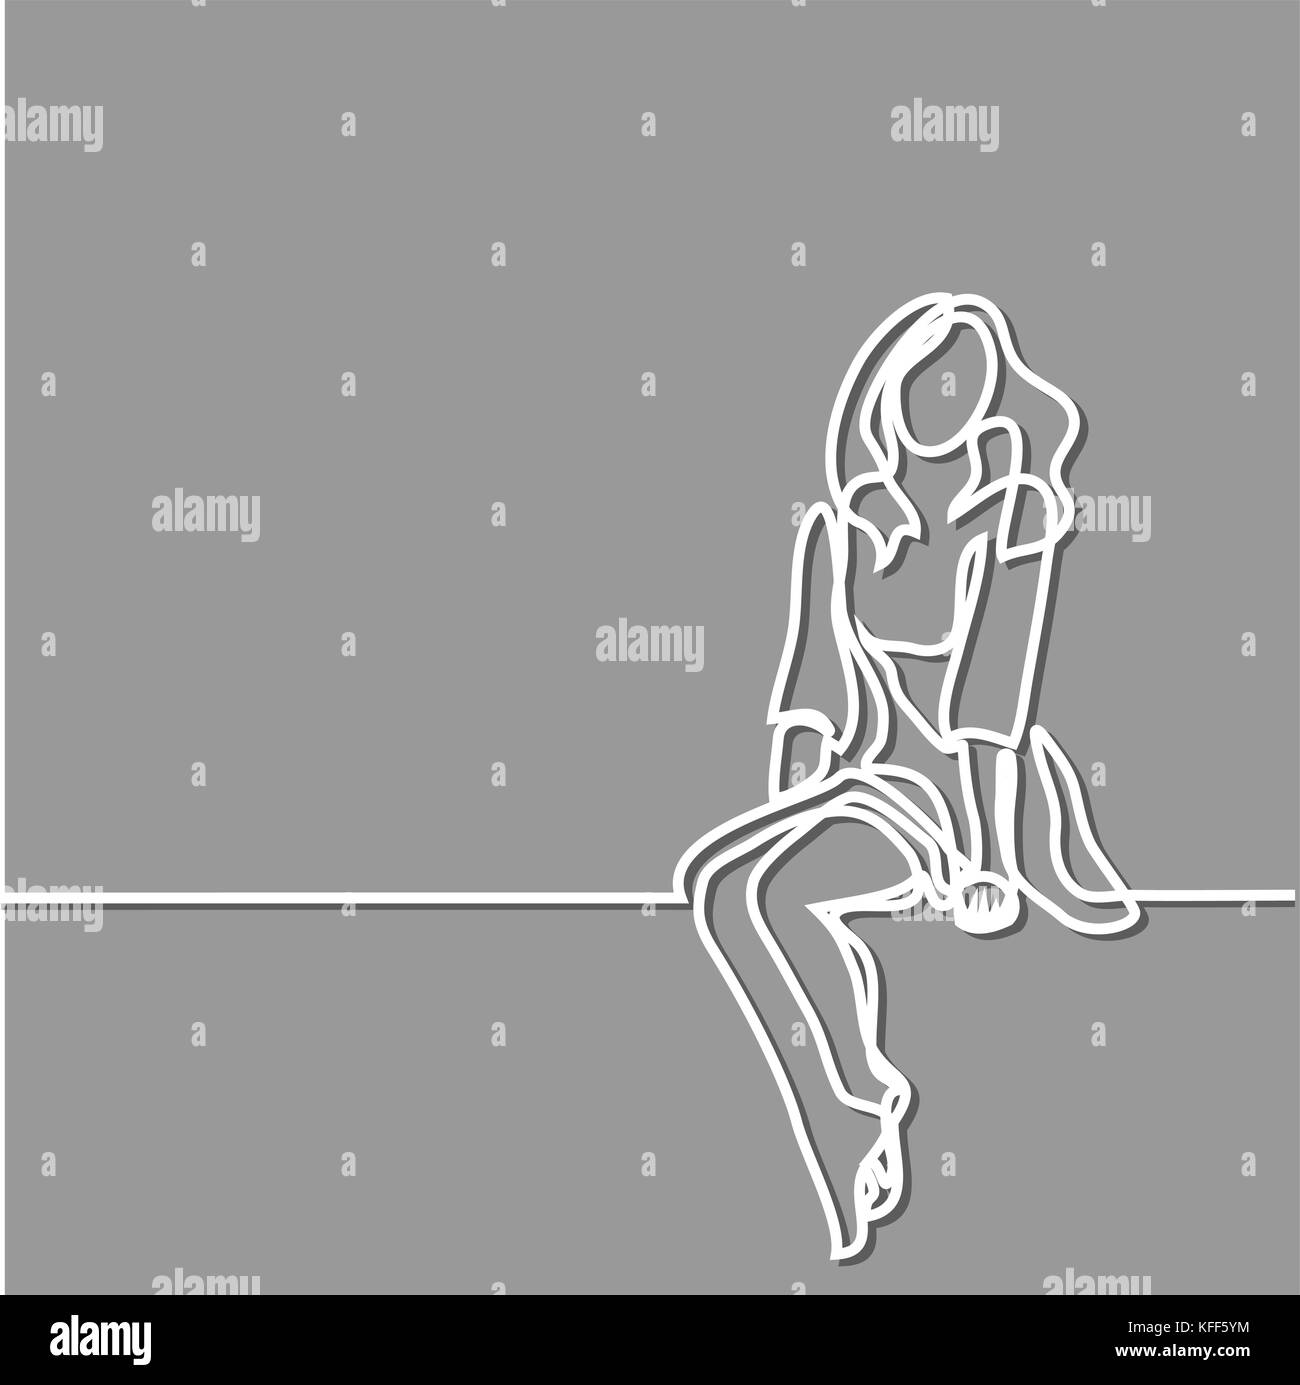 Junge Frau in Kleid sitzen. Durchgehende Linie zeichnen. Vector Illustration auf grauem Hintergrund. Stock Vektor